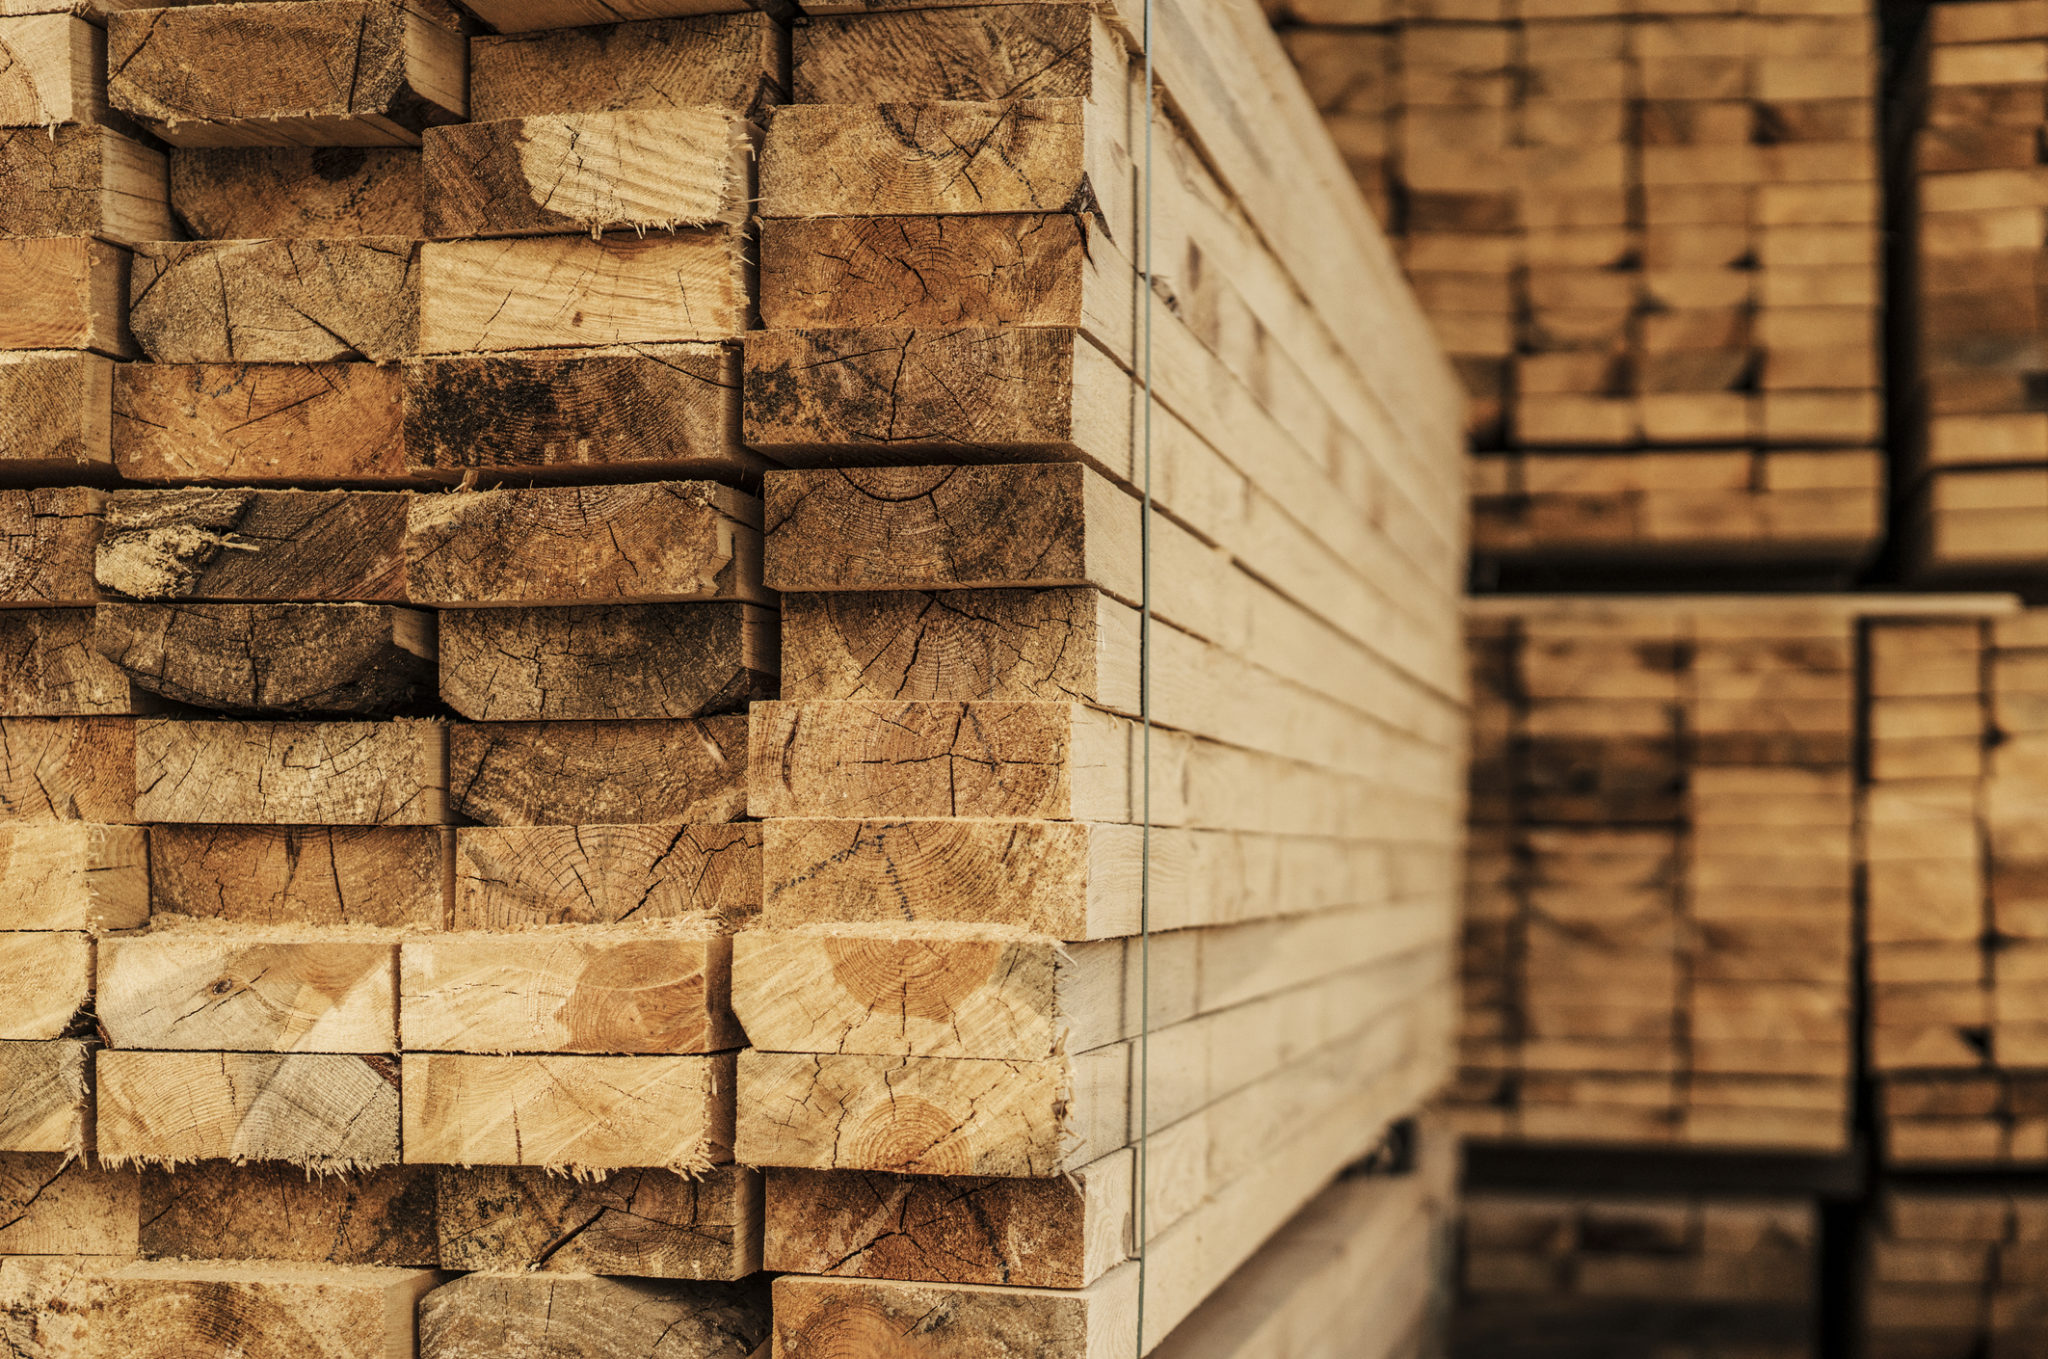 Lumber Price